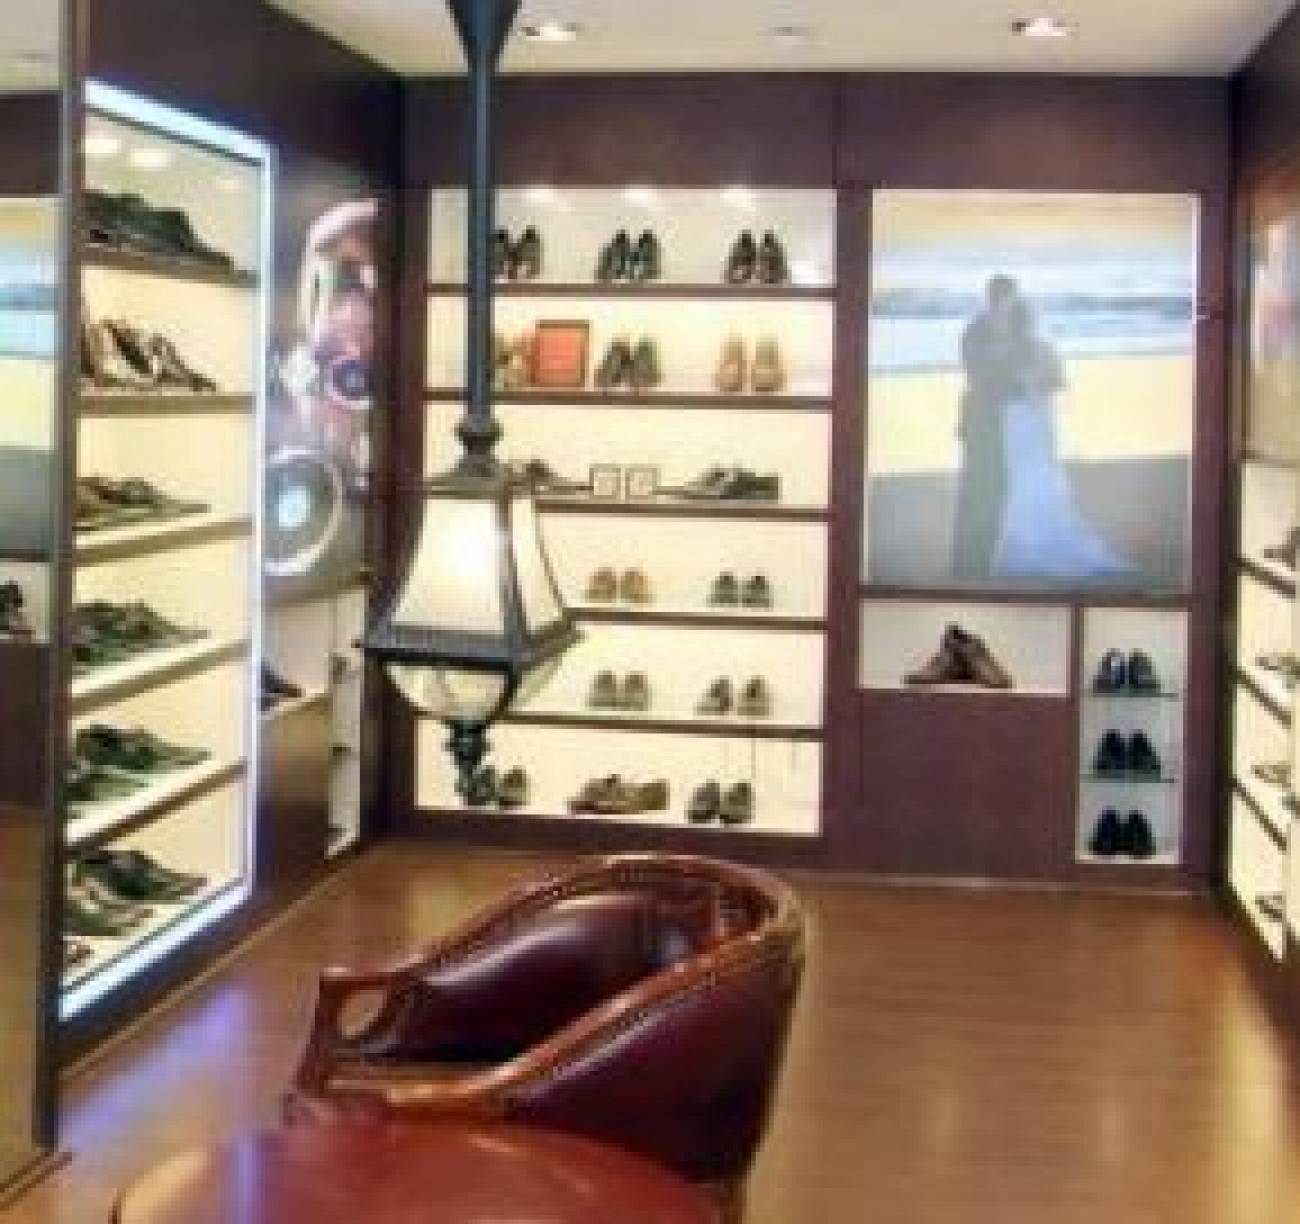 RUOSH Bandra | Footwear showroom Mumbai 